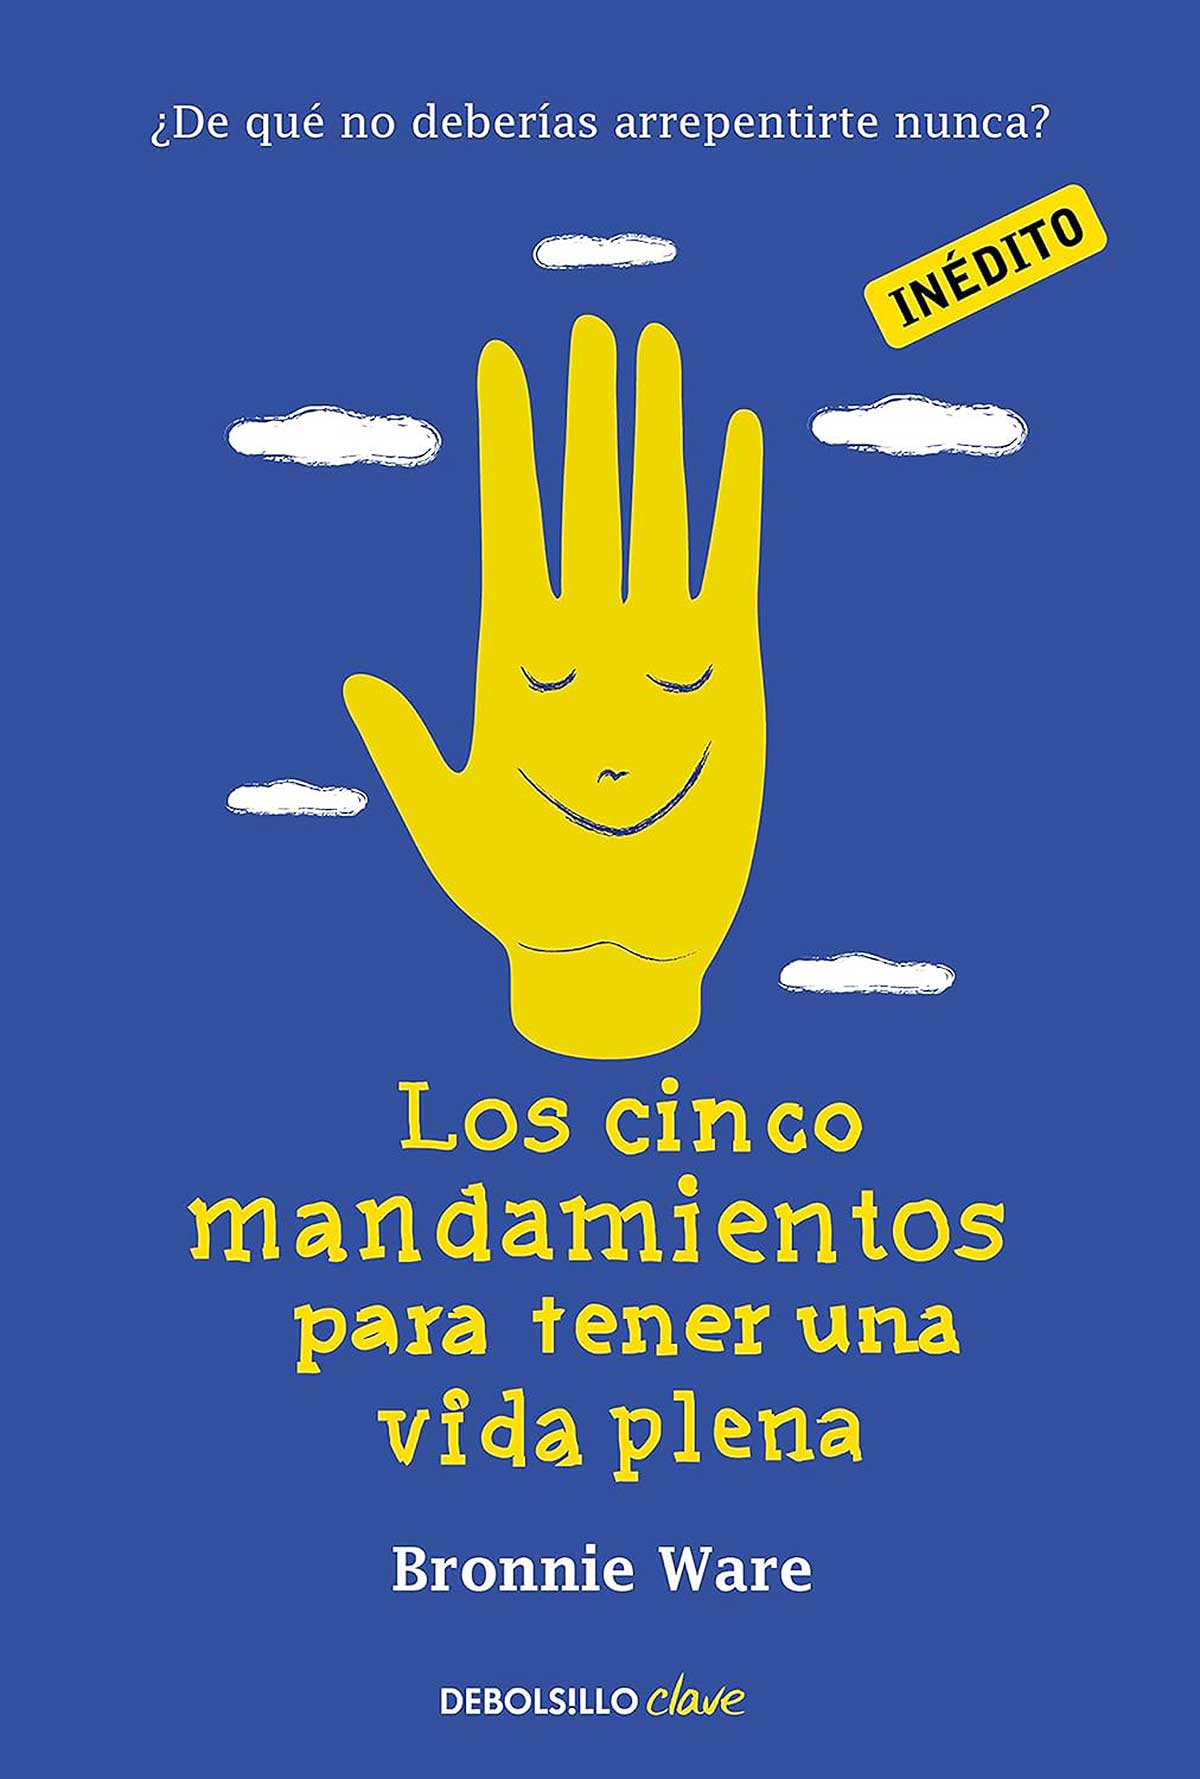  Los cinco mandamientos para tener una vida plena ¿De qué no deberías arrepentirte nunca? (portada edición española)